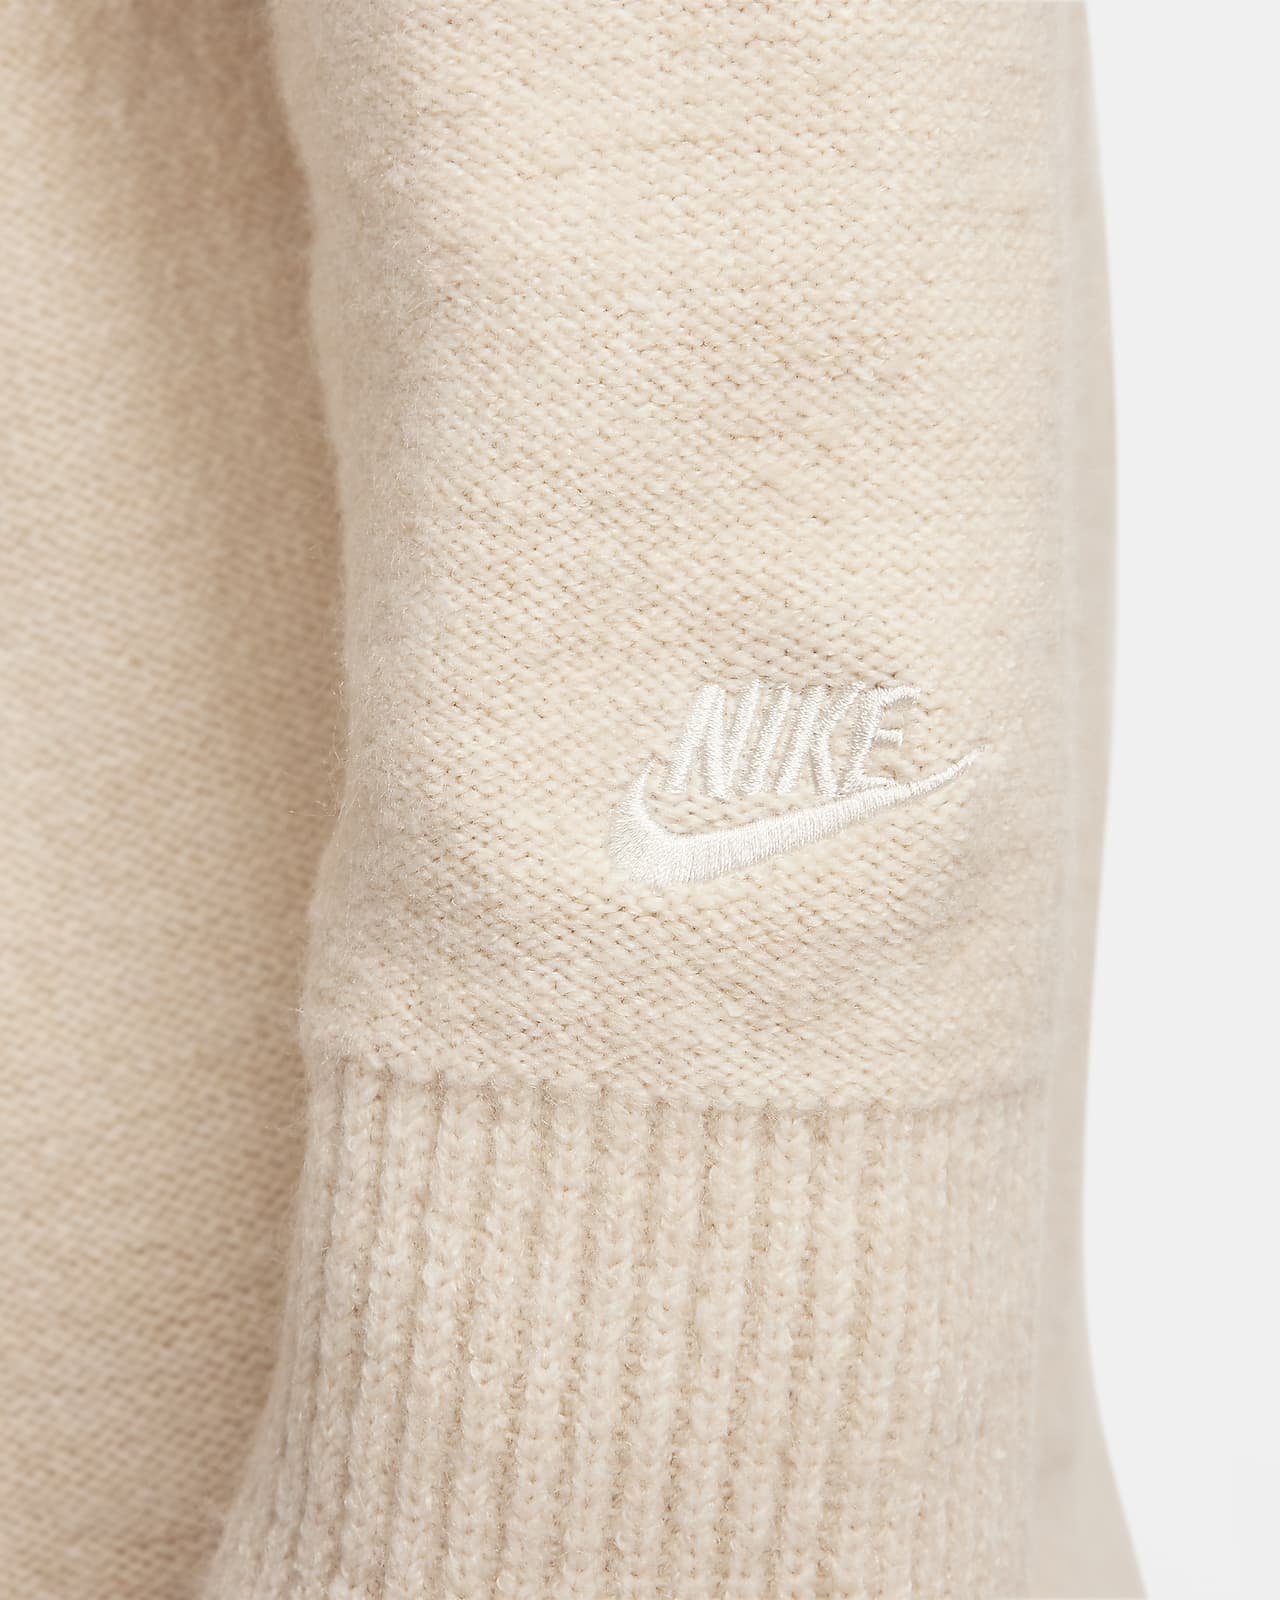 Nike Sportswear Tech Pack Men's Knit Jumper